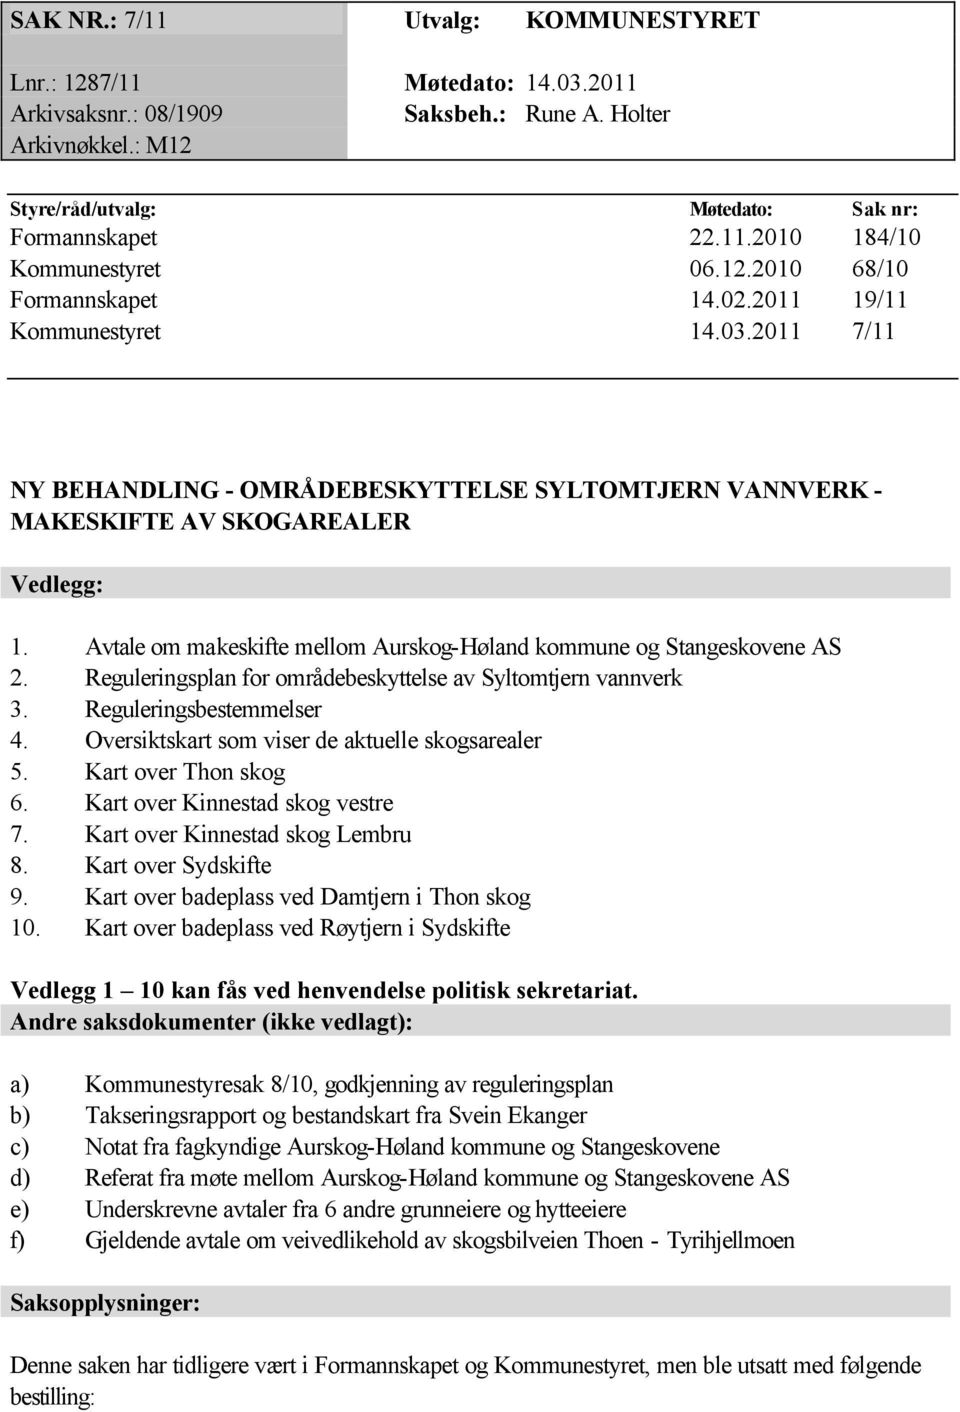 Avtale om makeskifte mellom Aurskog-Høland kommune og Stangeskovene AS 2. Reguleringsplan for områdebeskyttelse av Syltomtjern vannverk 3. Reguleringsbestemmelser 4.